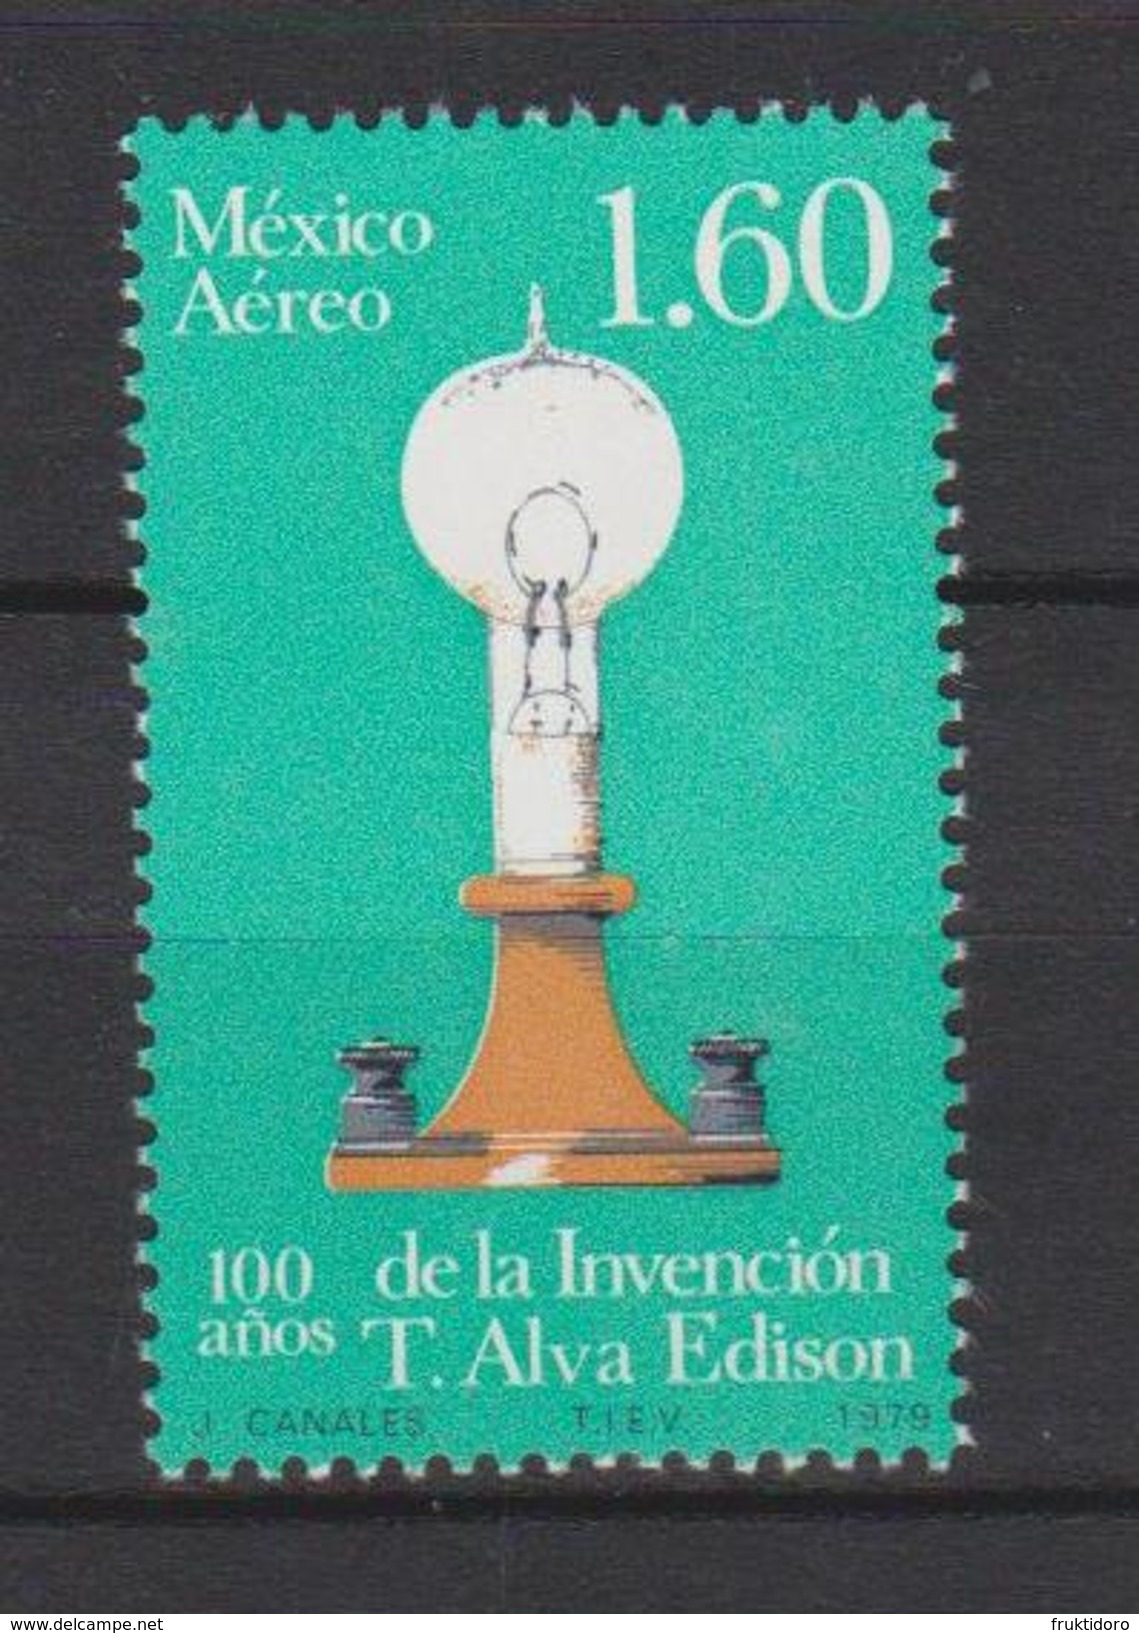 Mexico Mi 1650 Centenary Of The Invention Of Electric Bulb - T. Alva Edison - 1979 * * - Messico